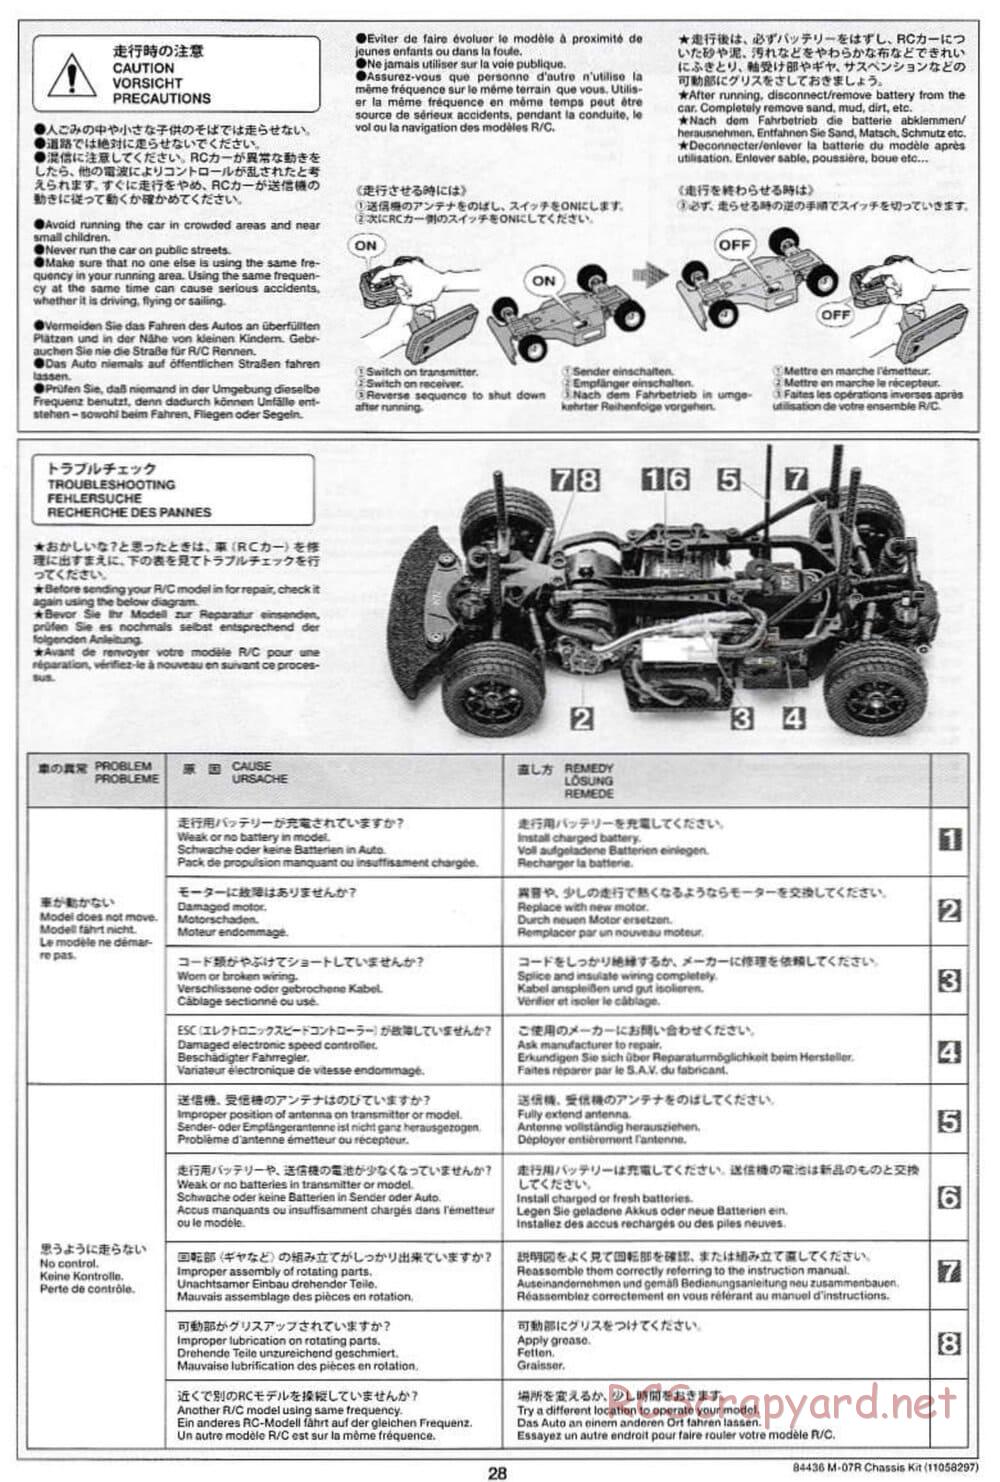 Tamiya - M-07R Chassis - Manual - Page 28